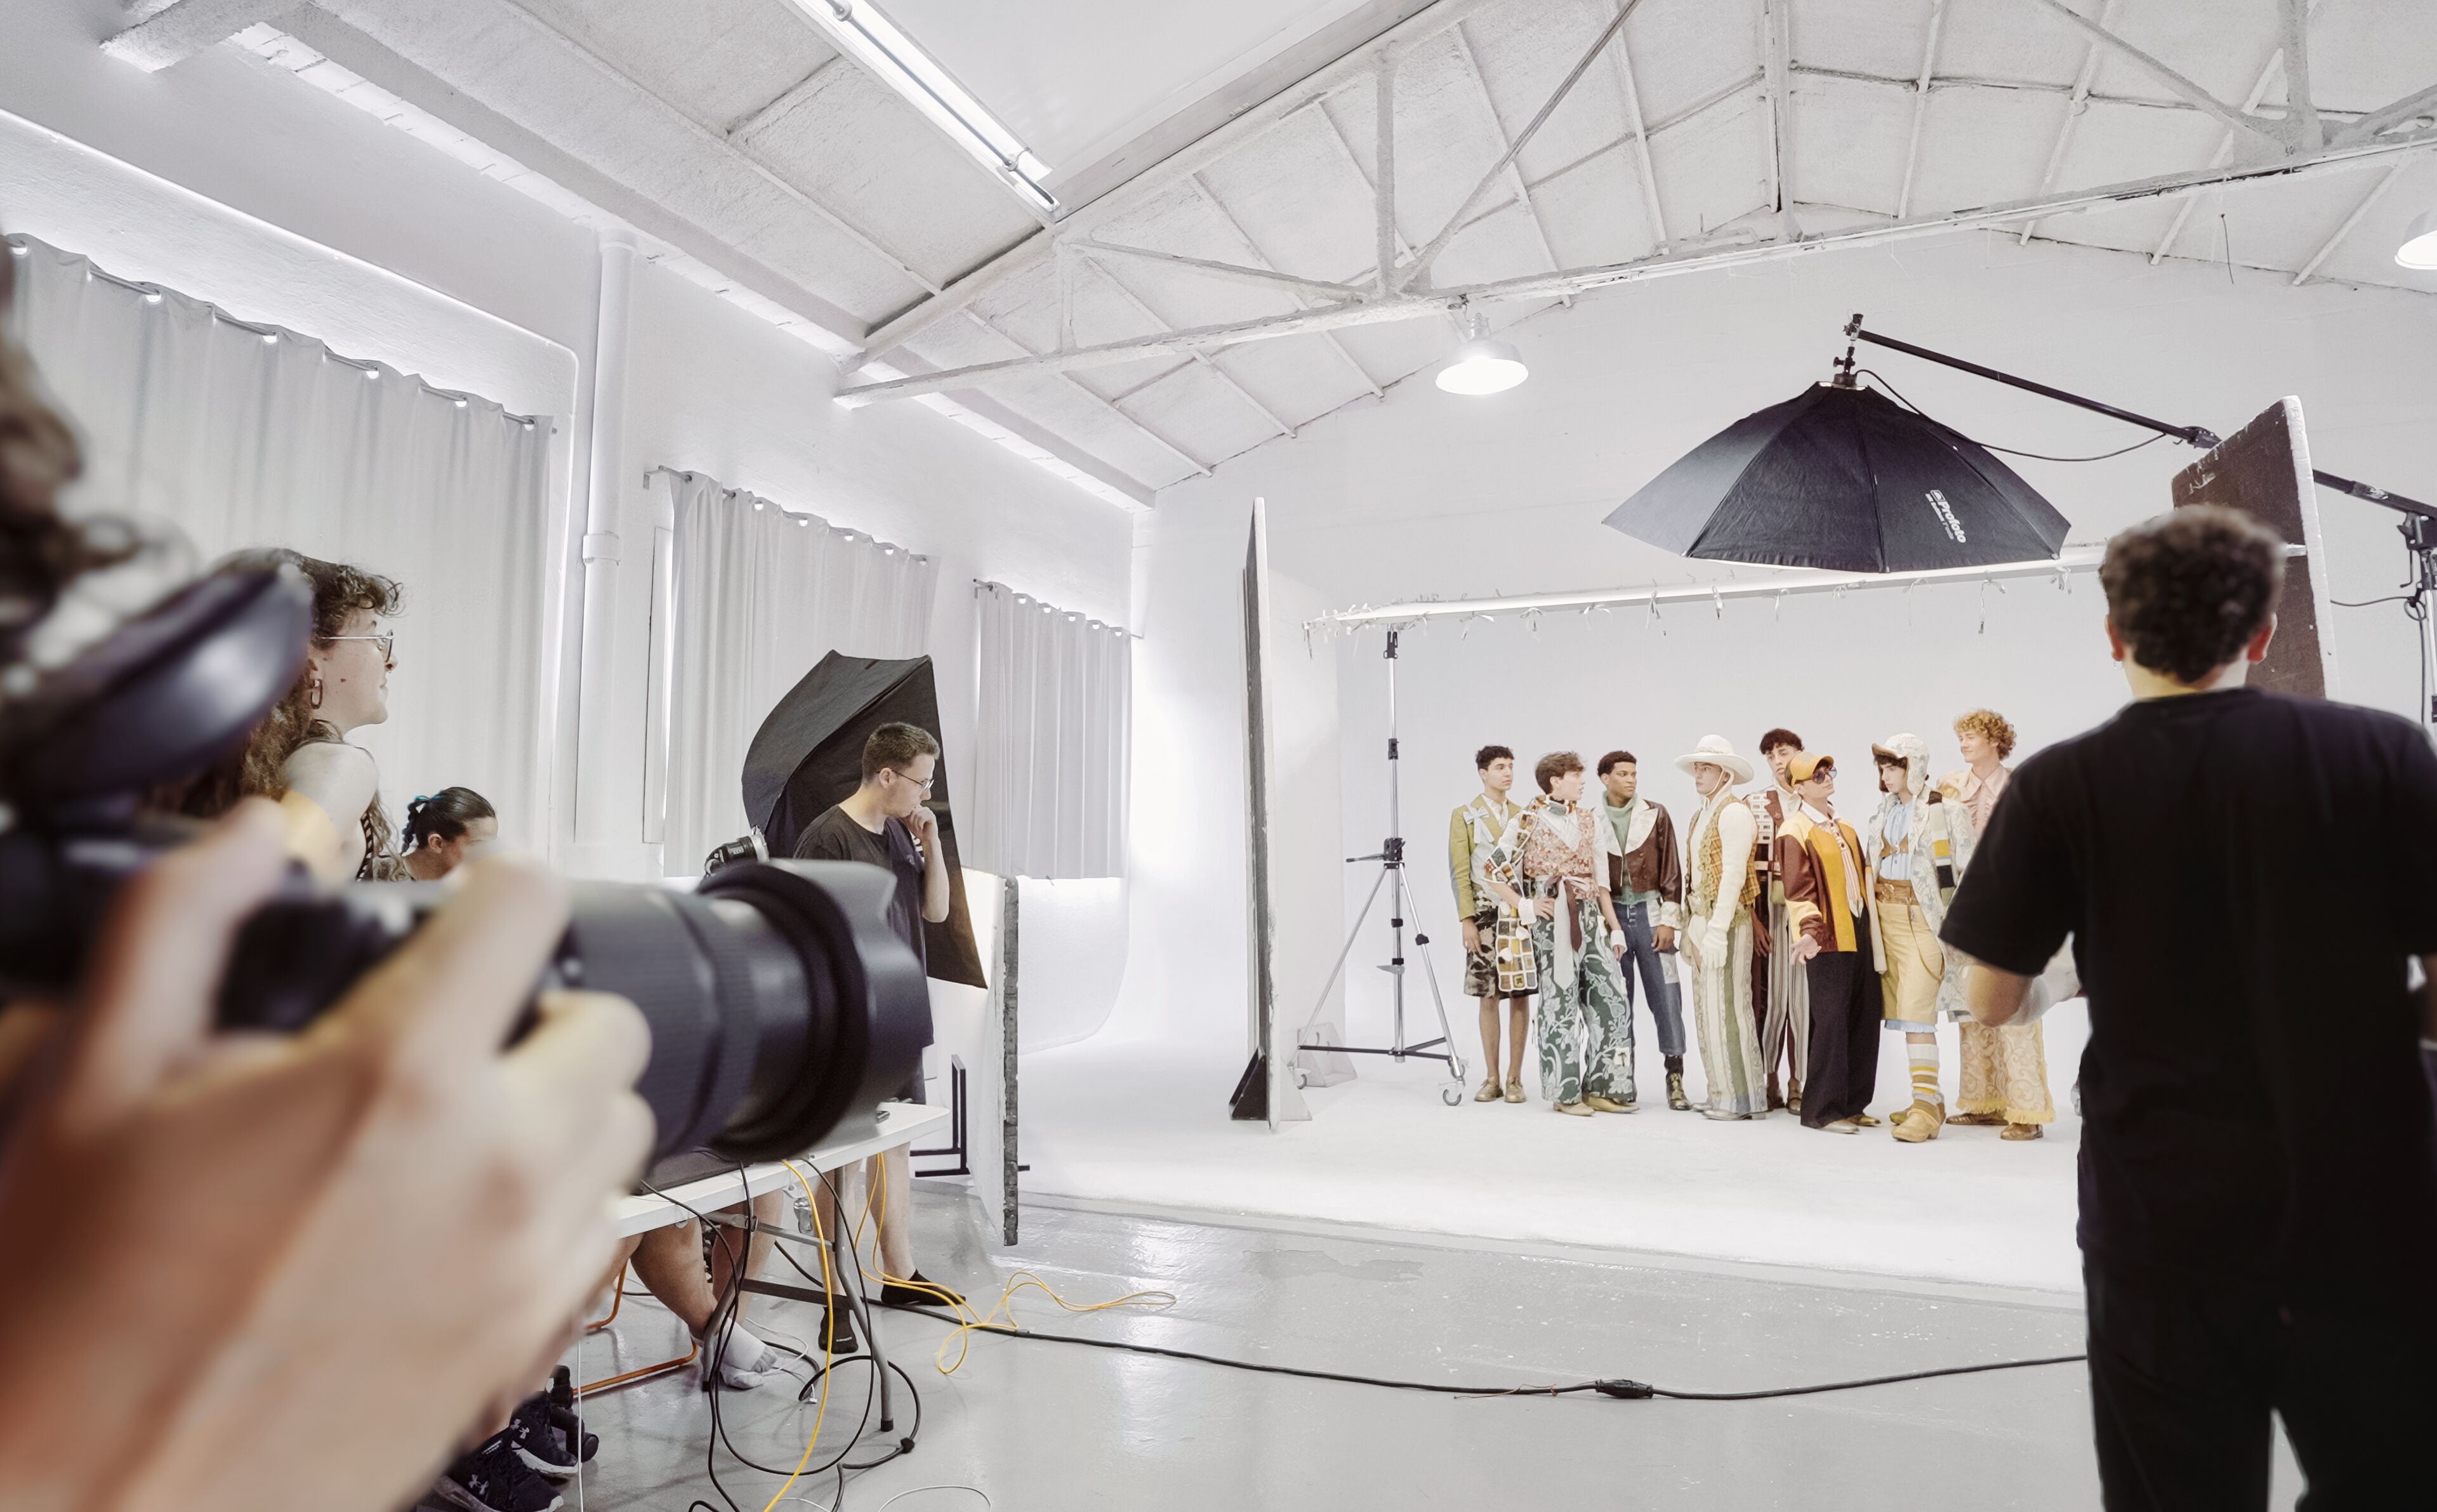 Una mirada entre bastidores a una sesión de fotos de moda con modelos y fotógrafos en un entorno de estudio profesional.